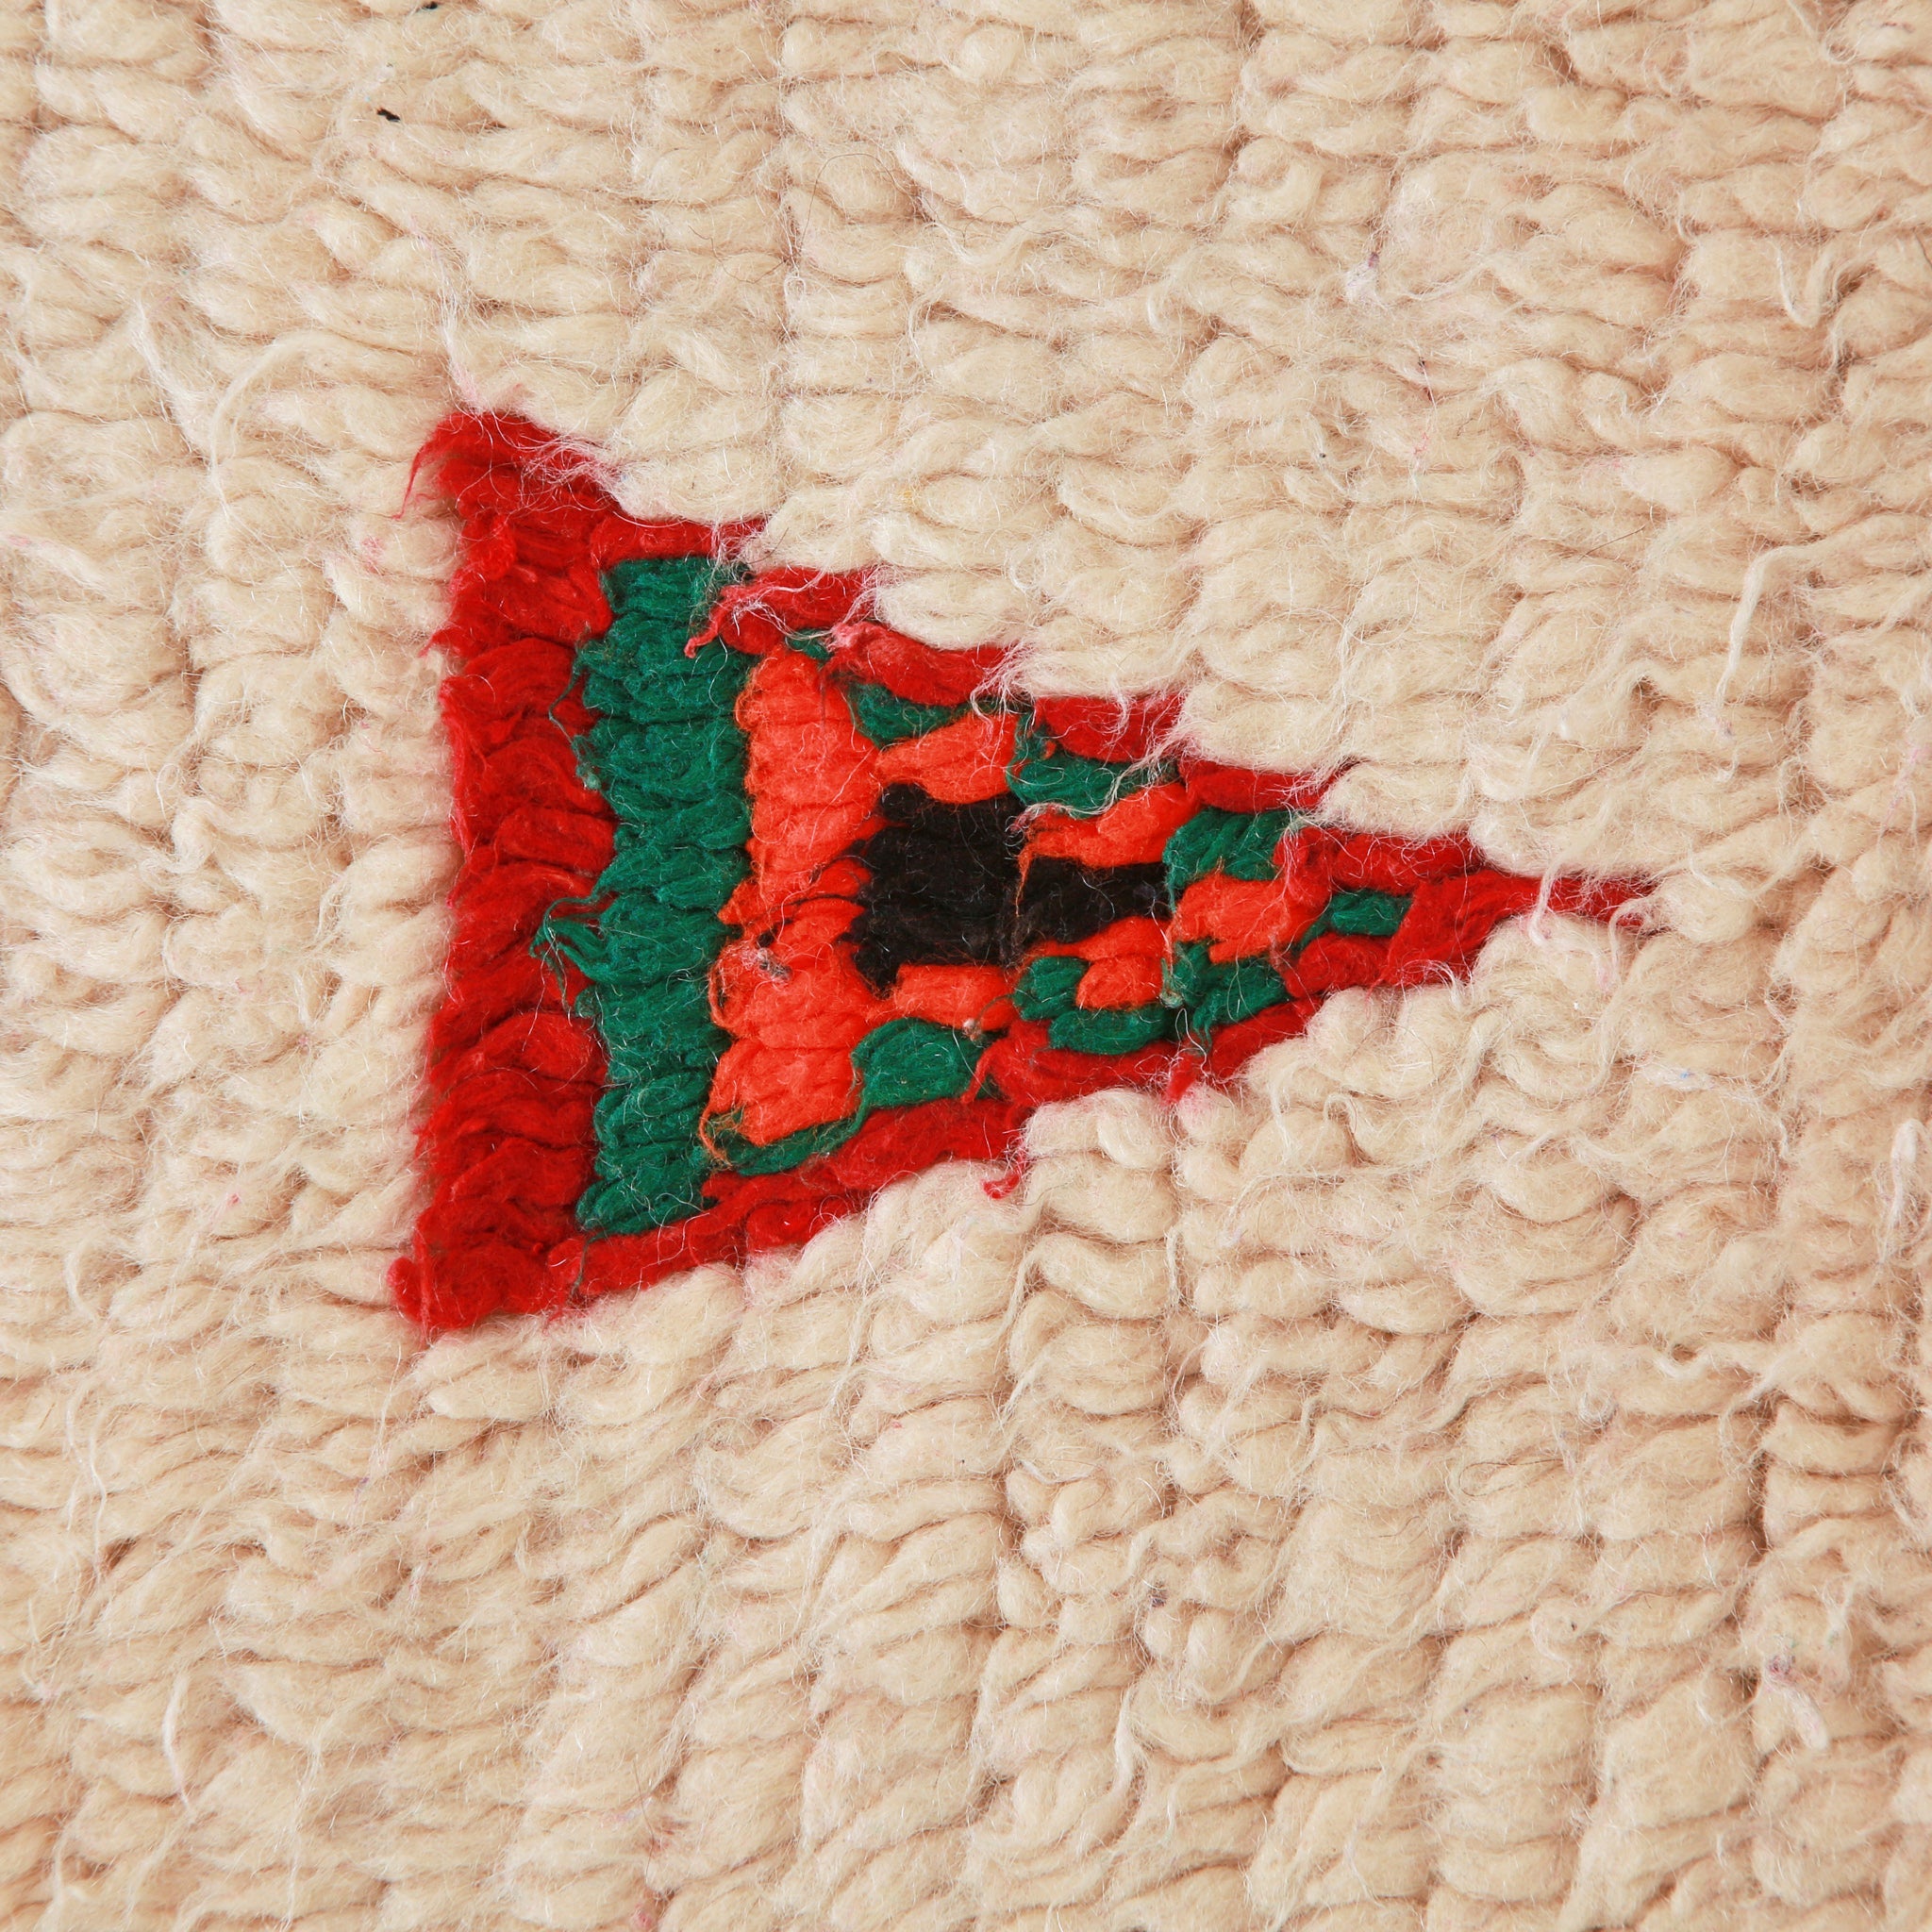 dettaglio ravvicinato della lana e di un triangoli sovrapposti di colore rosso,verde,arancione e nero